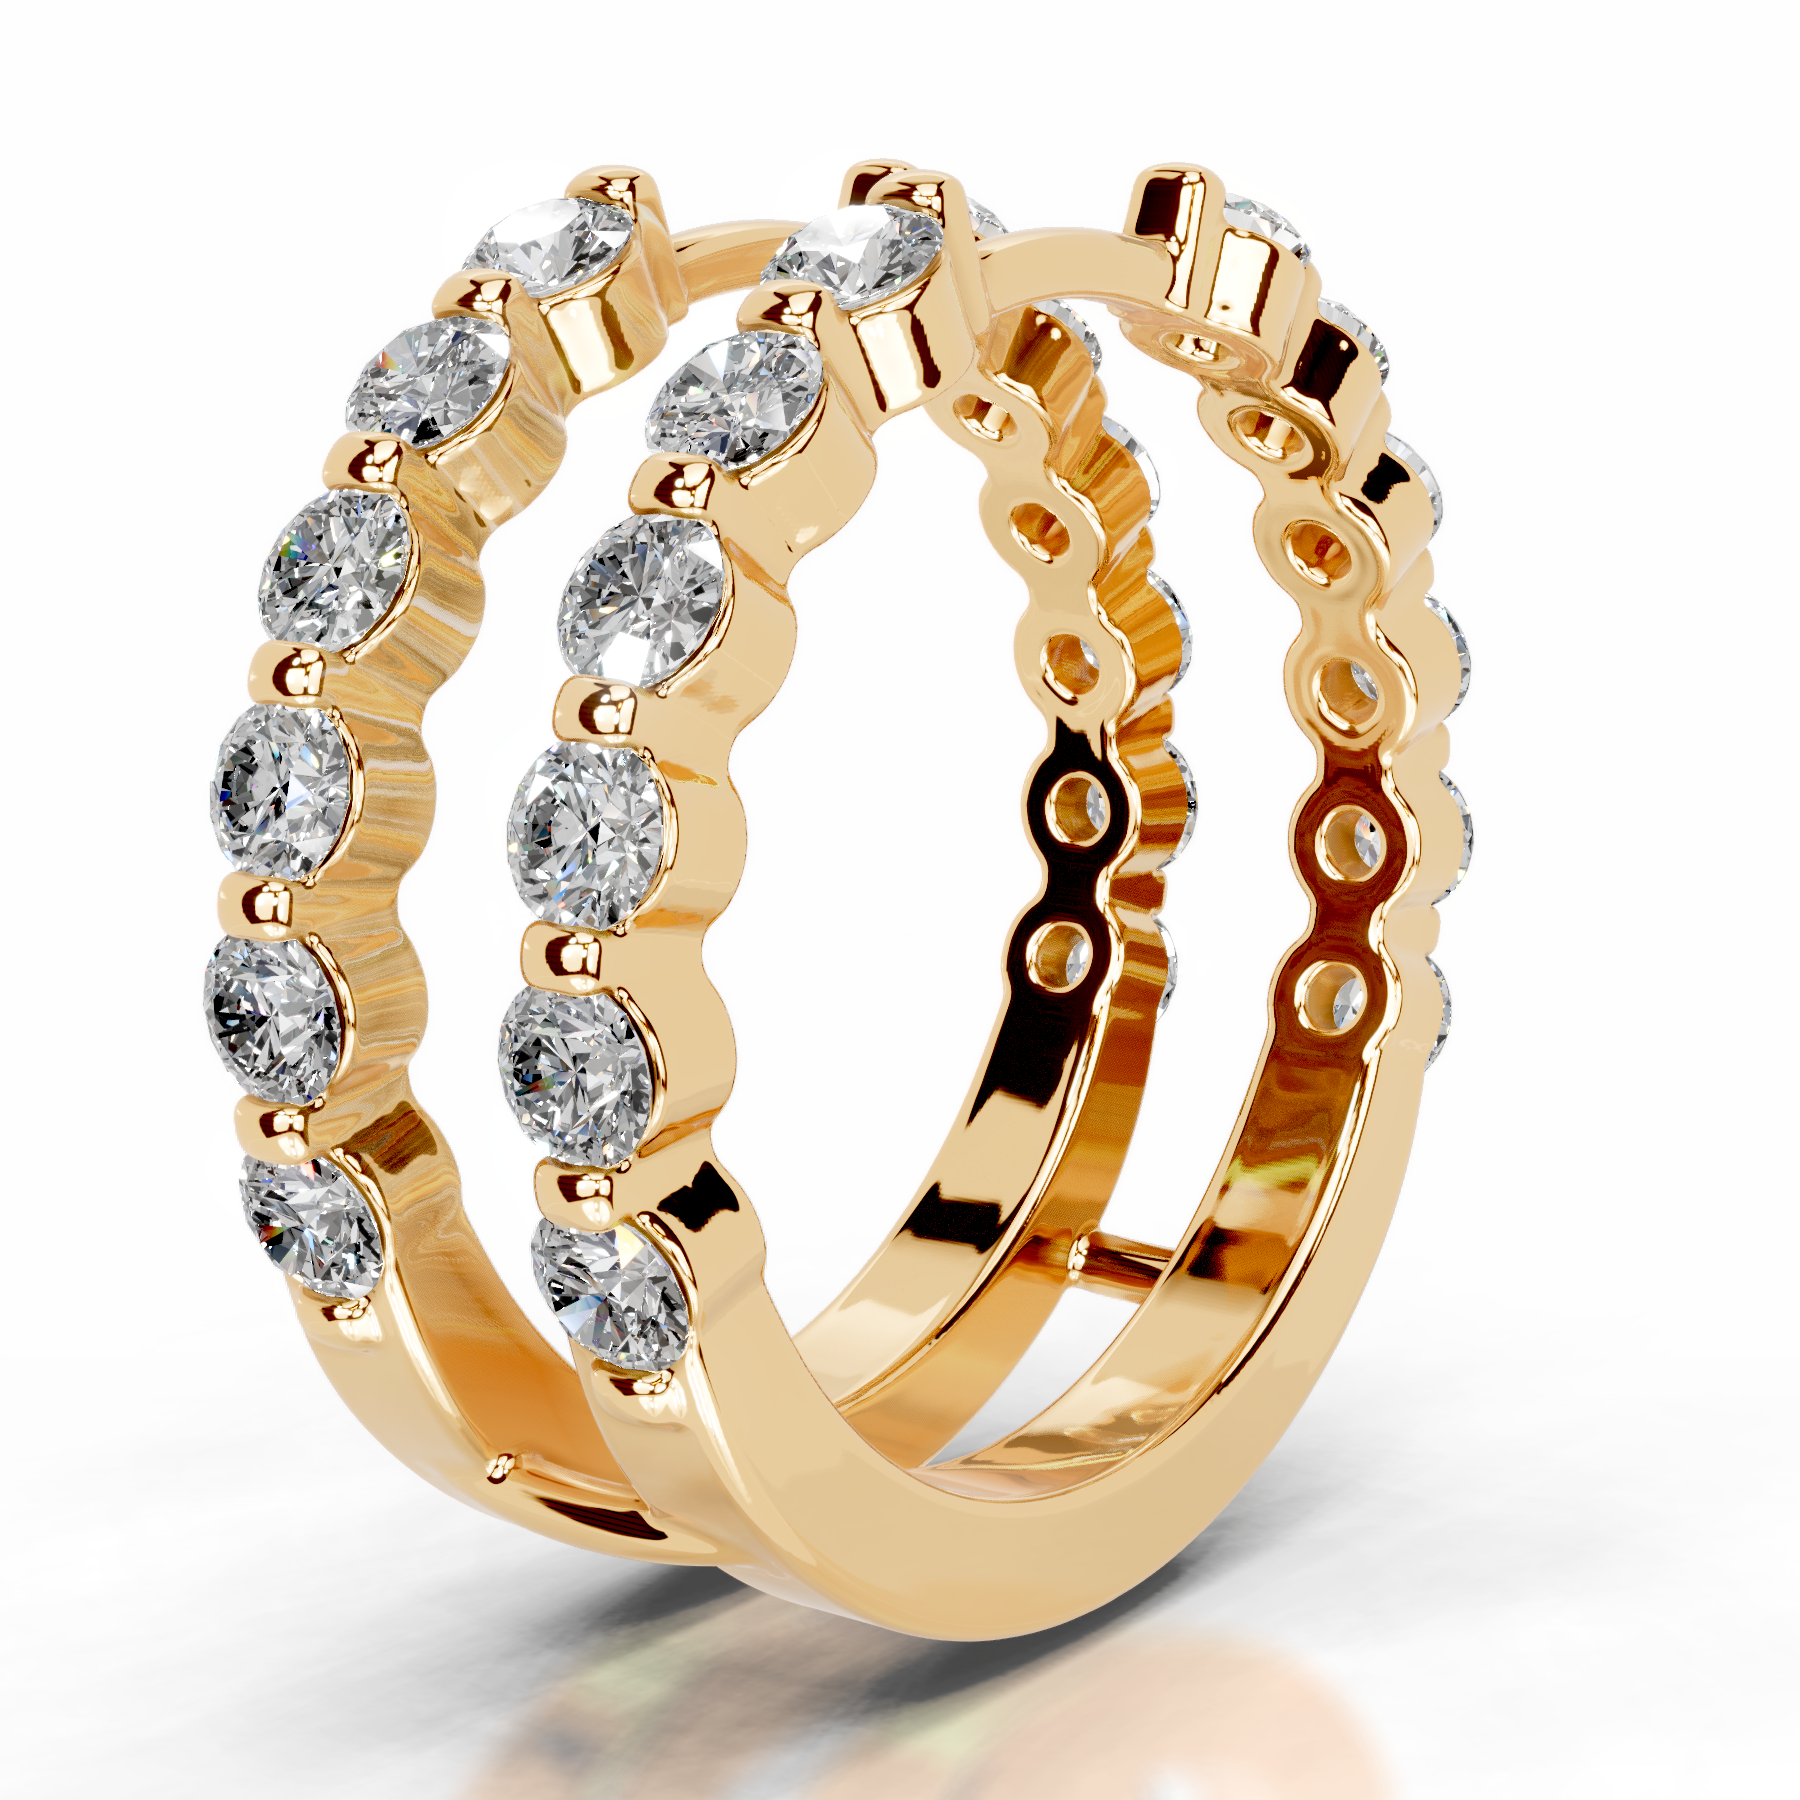 Ashley Diamond Wedding Ring   (1.25 Carat) -18K Yellow Gold